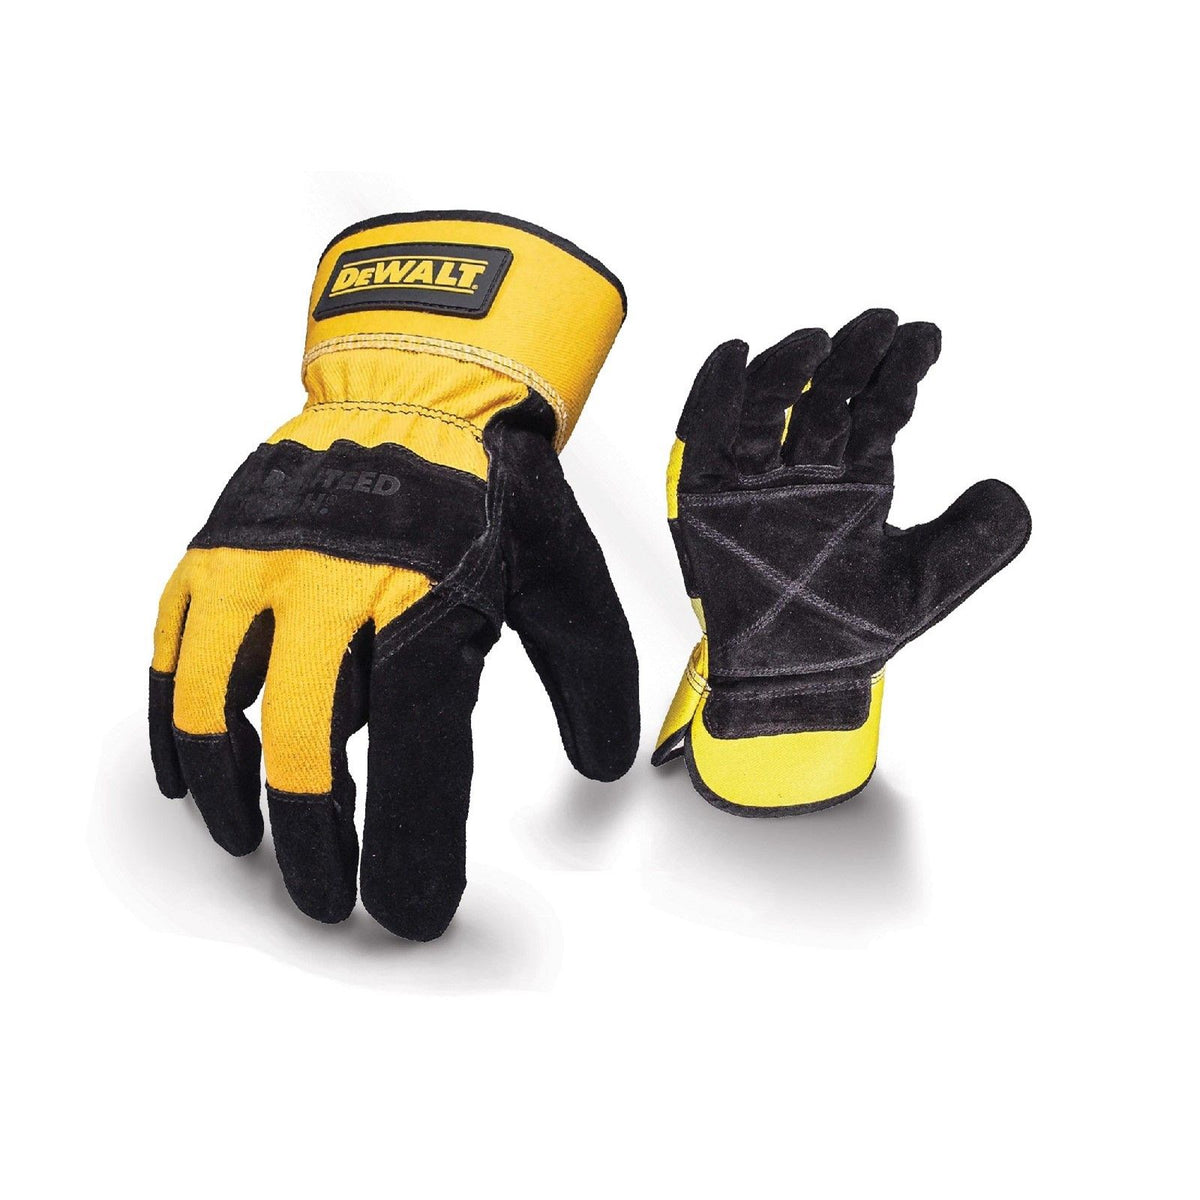 Dewalt Rigger Glove - Black/Yellow - Size Itm (26885-45109-01)